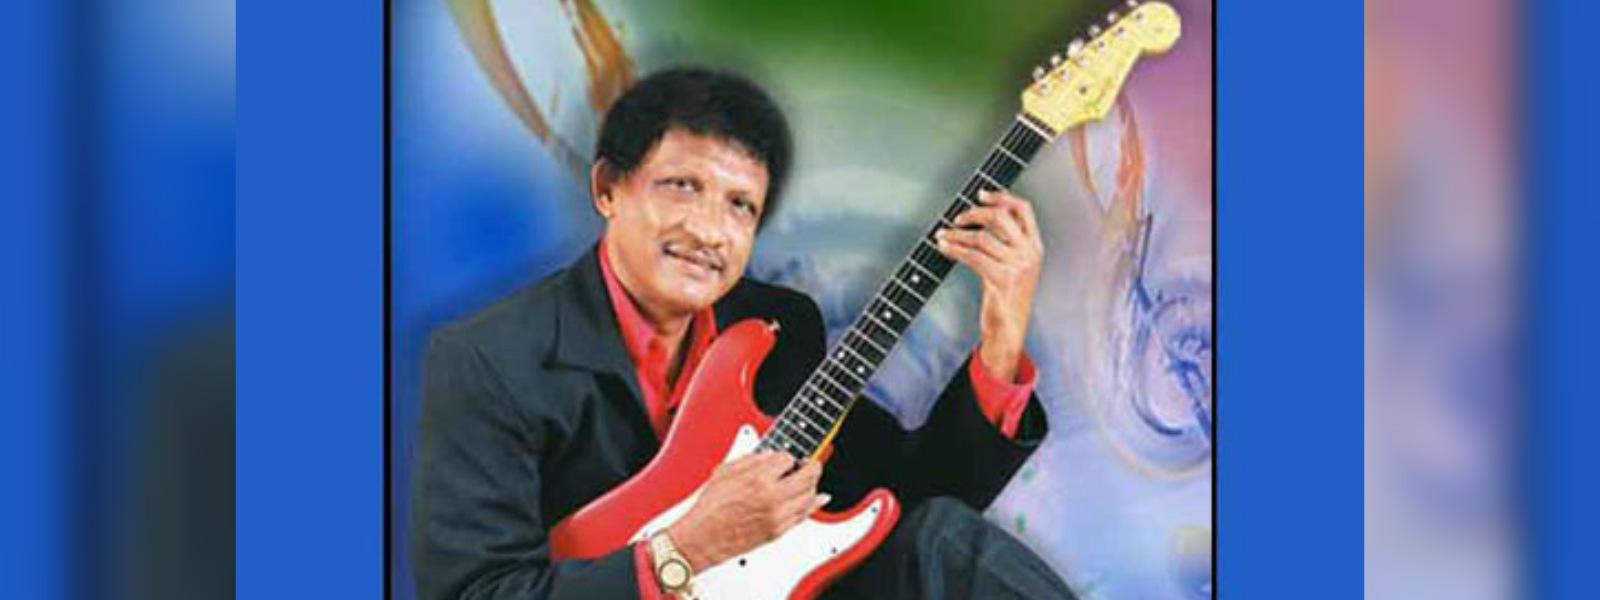 Veteran singer Upali Kannangara dies aged 67 